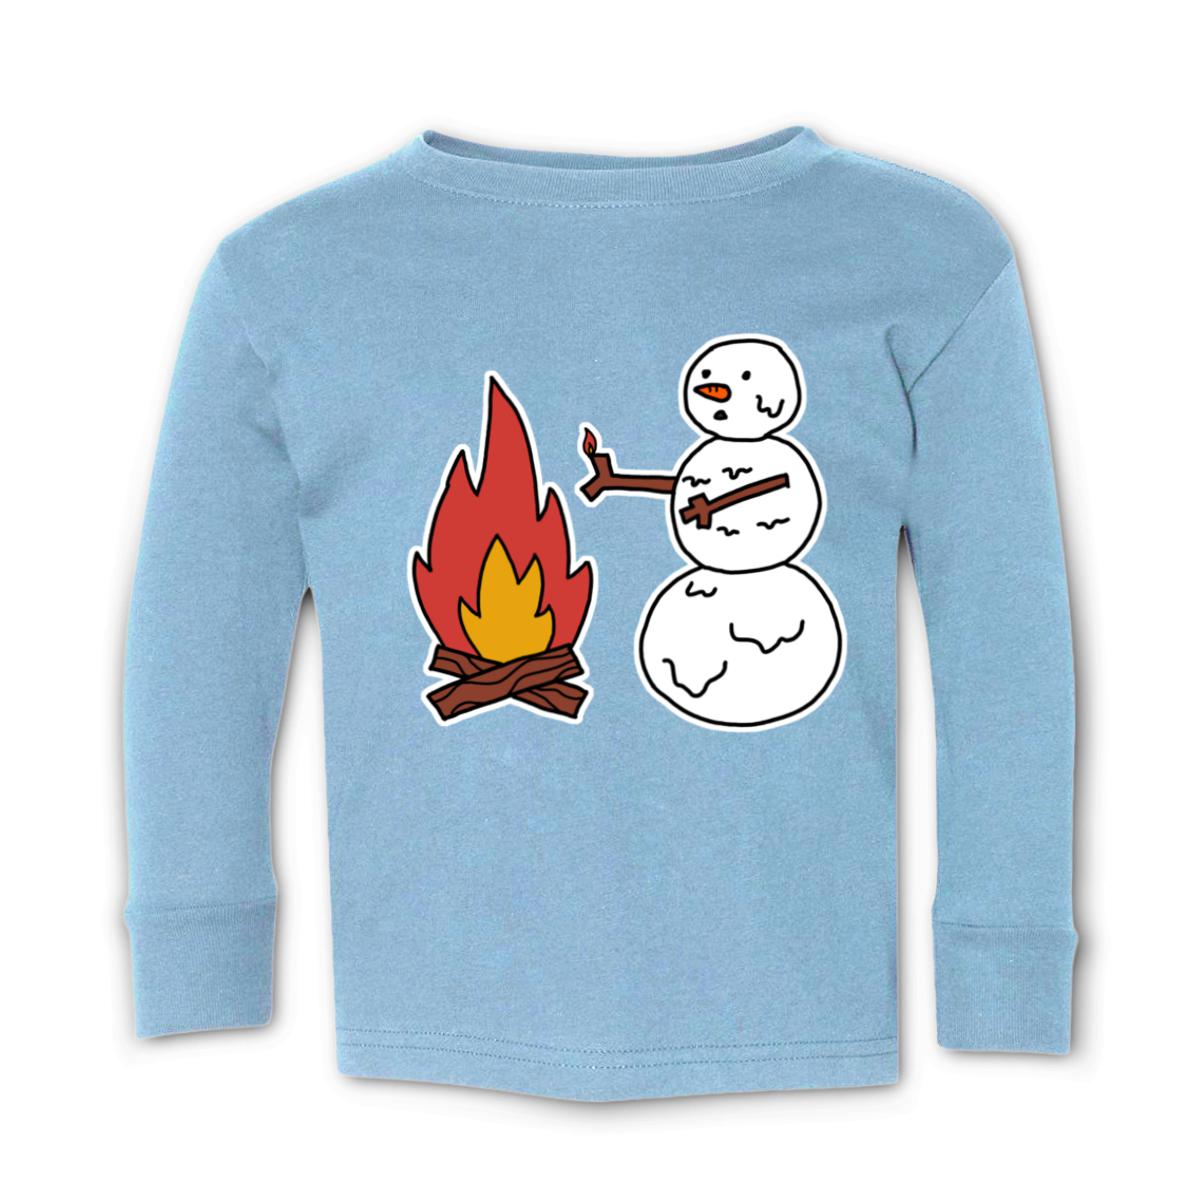 Snowman Keeping Warm Toddler Long Sleeve Tee 4T light-blue